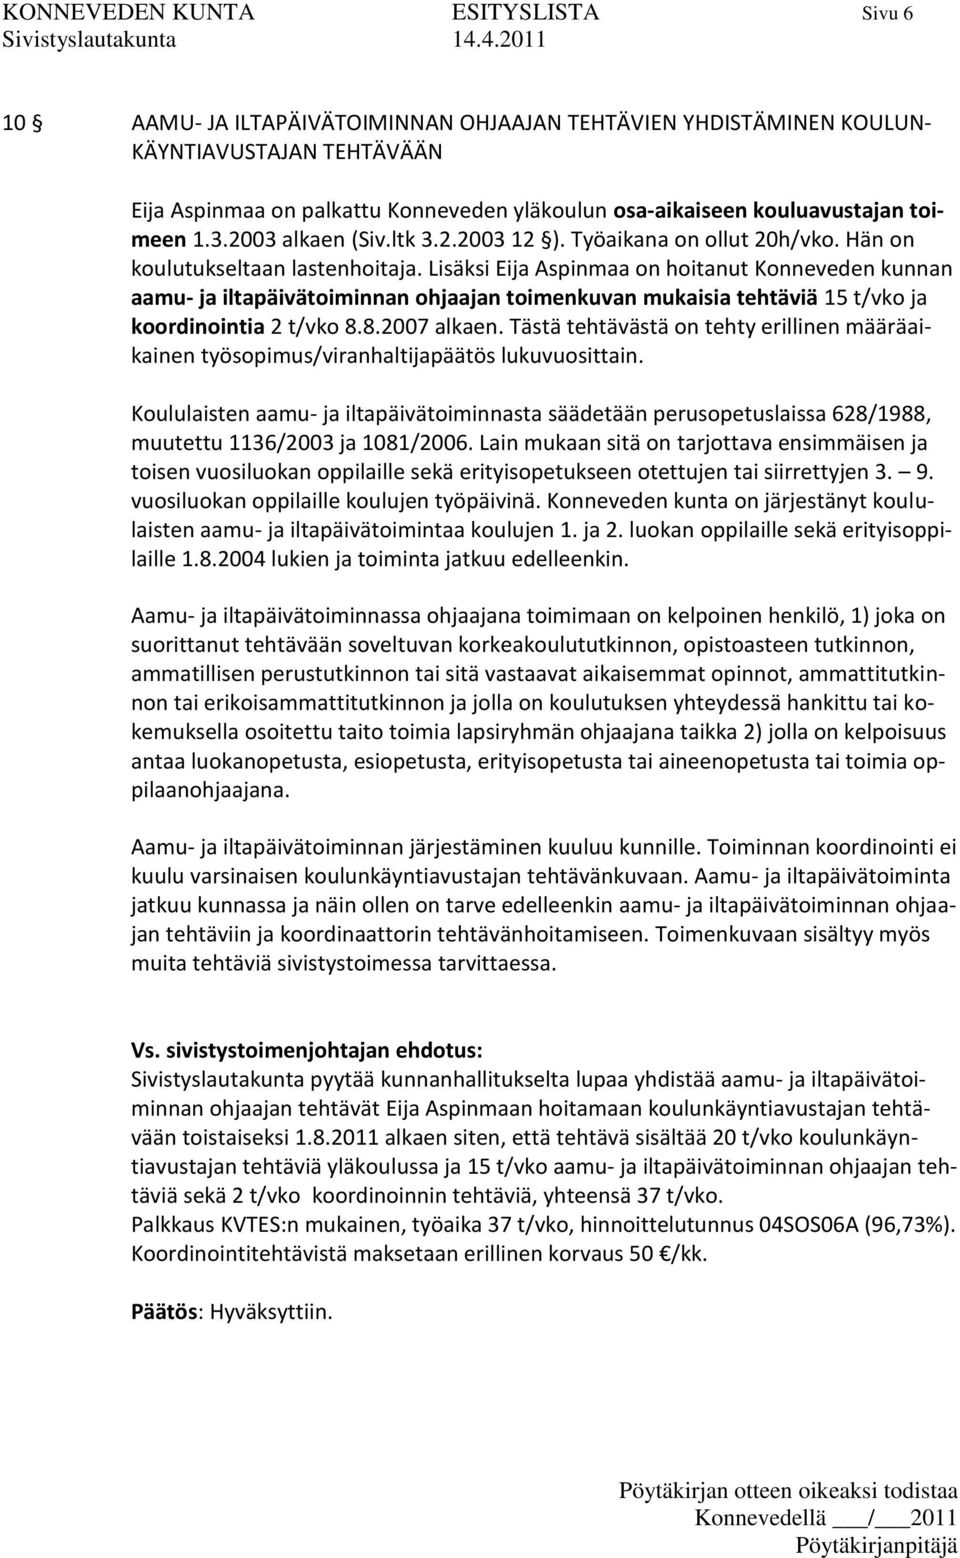 Lisäksi Eija Aspinmaa on hoitanut Konneveden kunnan aamu- ja iltapäivätoiminnan ohjaajan toimenkuvan mukaisia tehtäviä 15 t/vko ja koordinointia 2 t/vko 8.8.2007 alkaen.